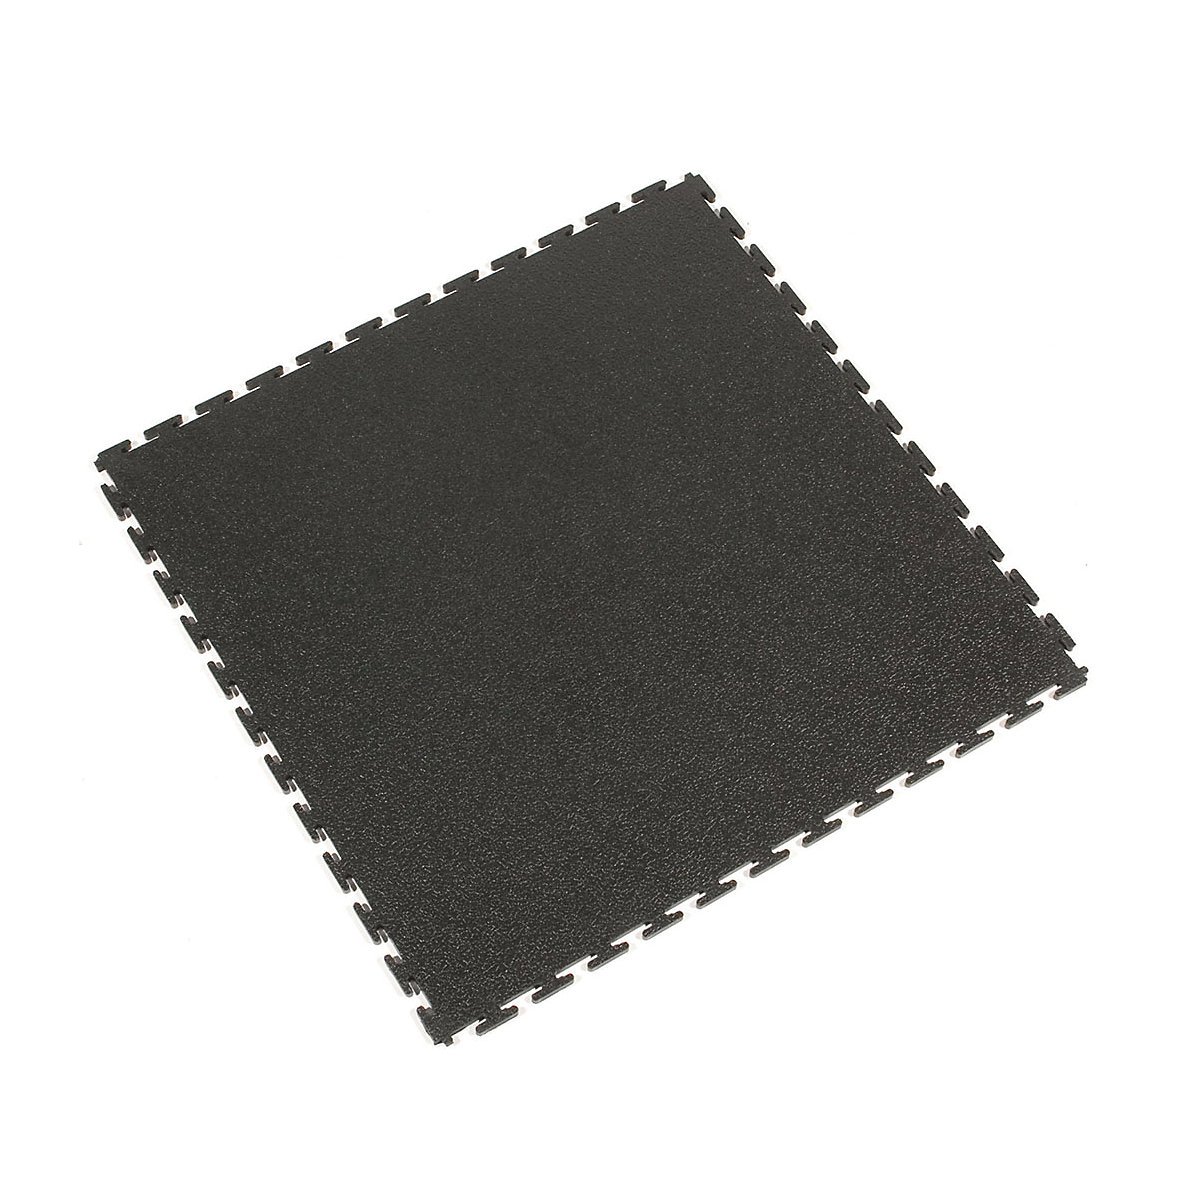 PVC-Bodenfliesen Tough-Lock, mit strukturierter Oberfläche, VE 8 Stk, schwarz